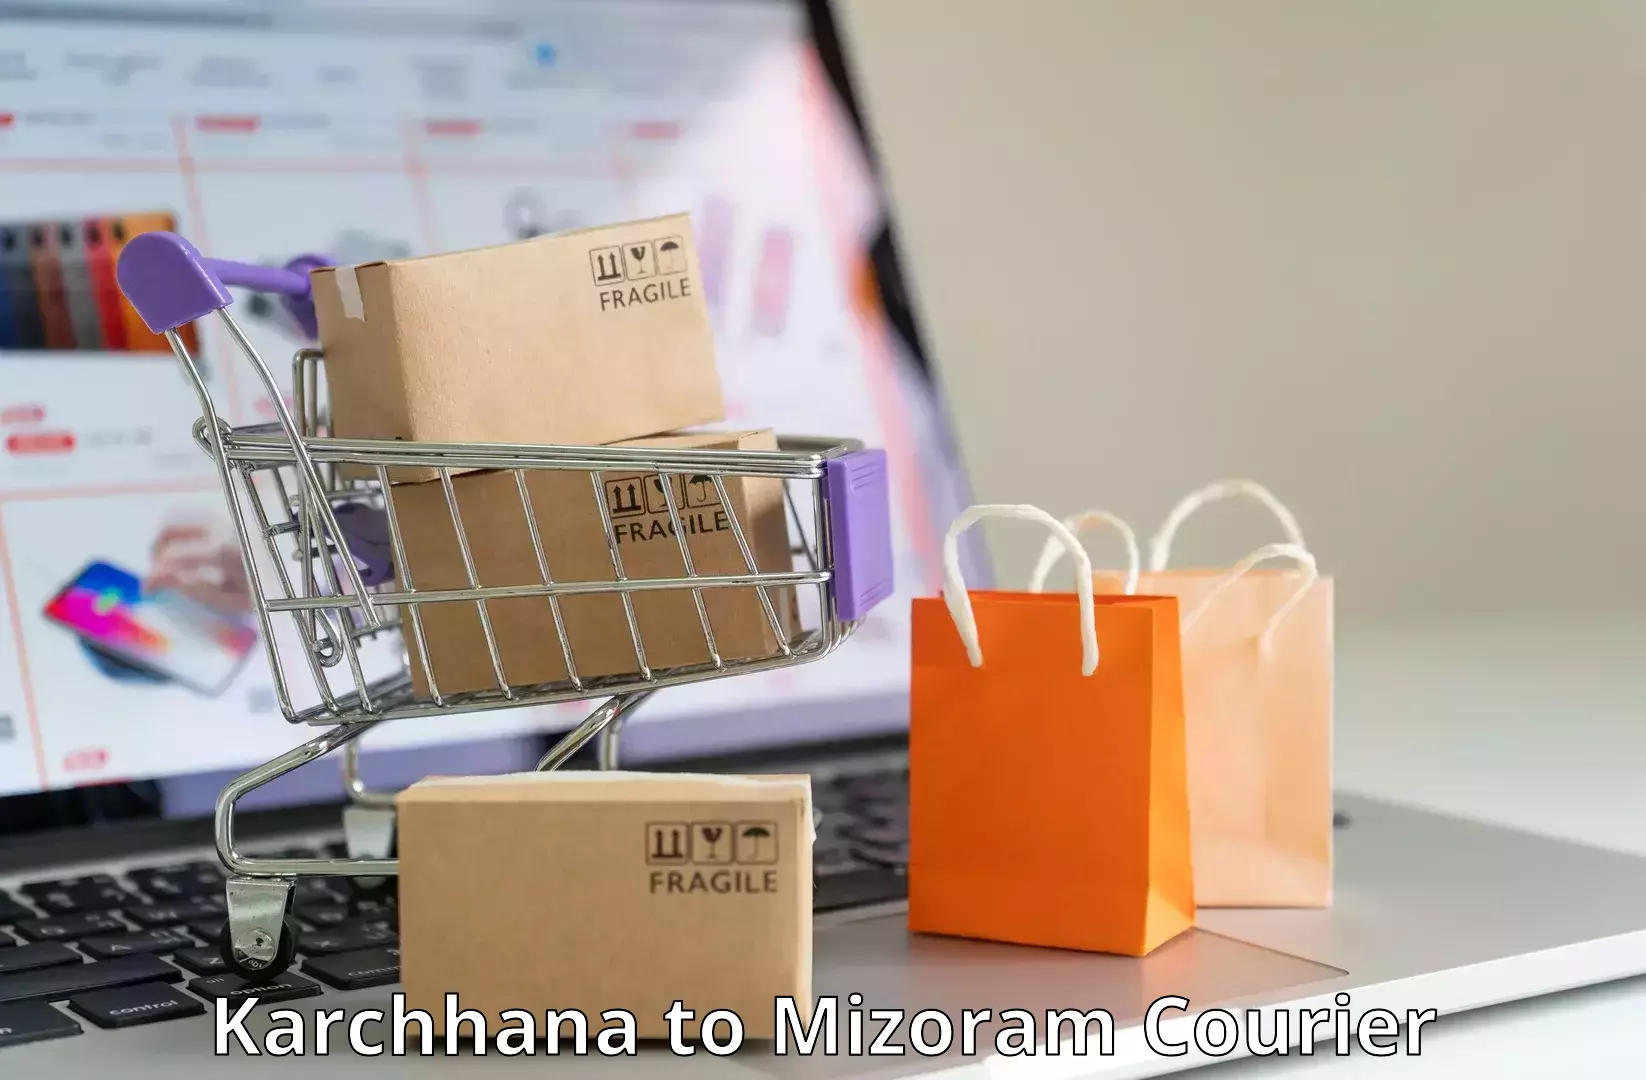 Door-to-door shipment Karchhana to Mizoram